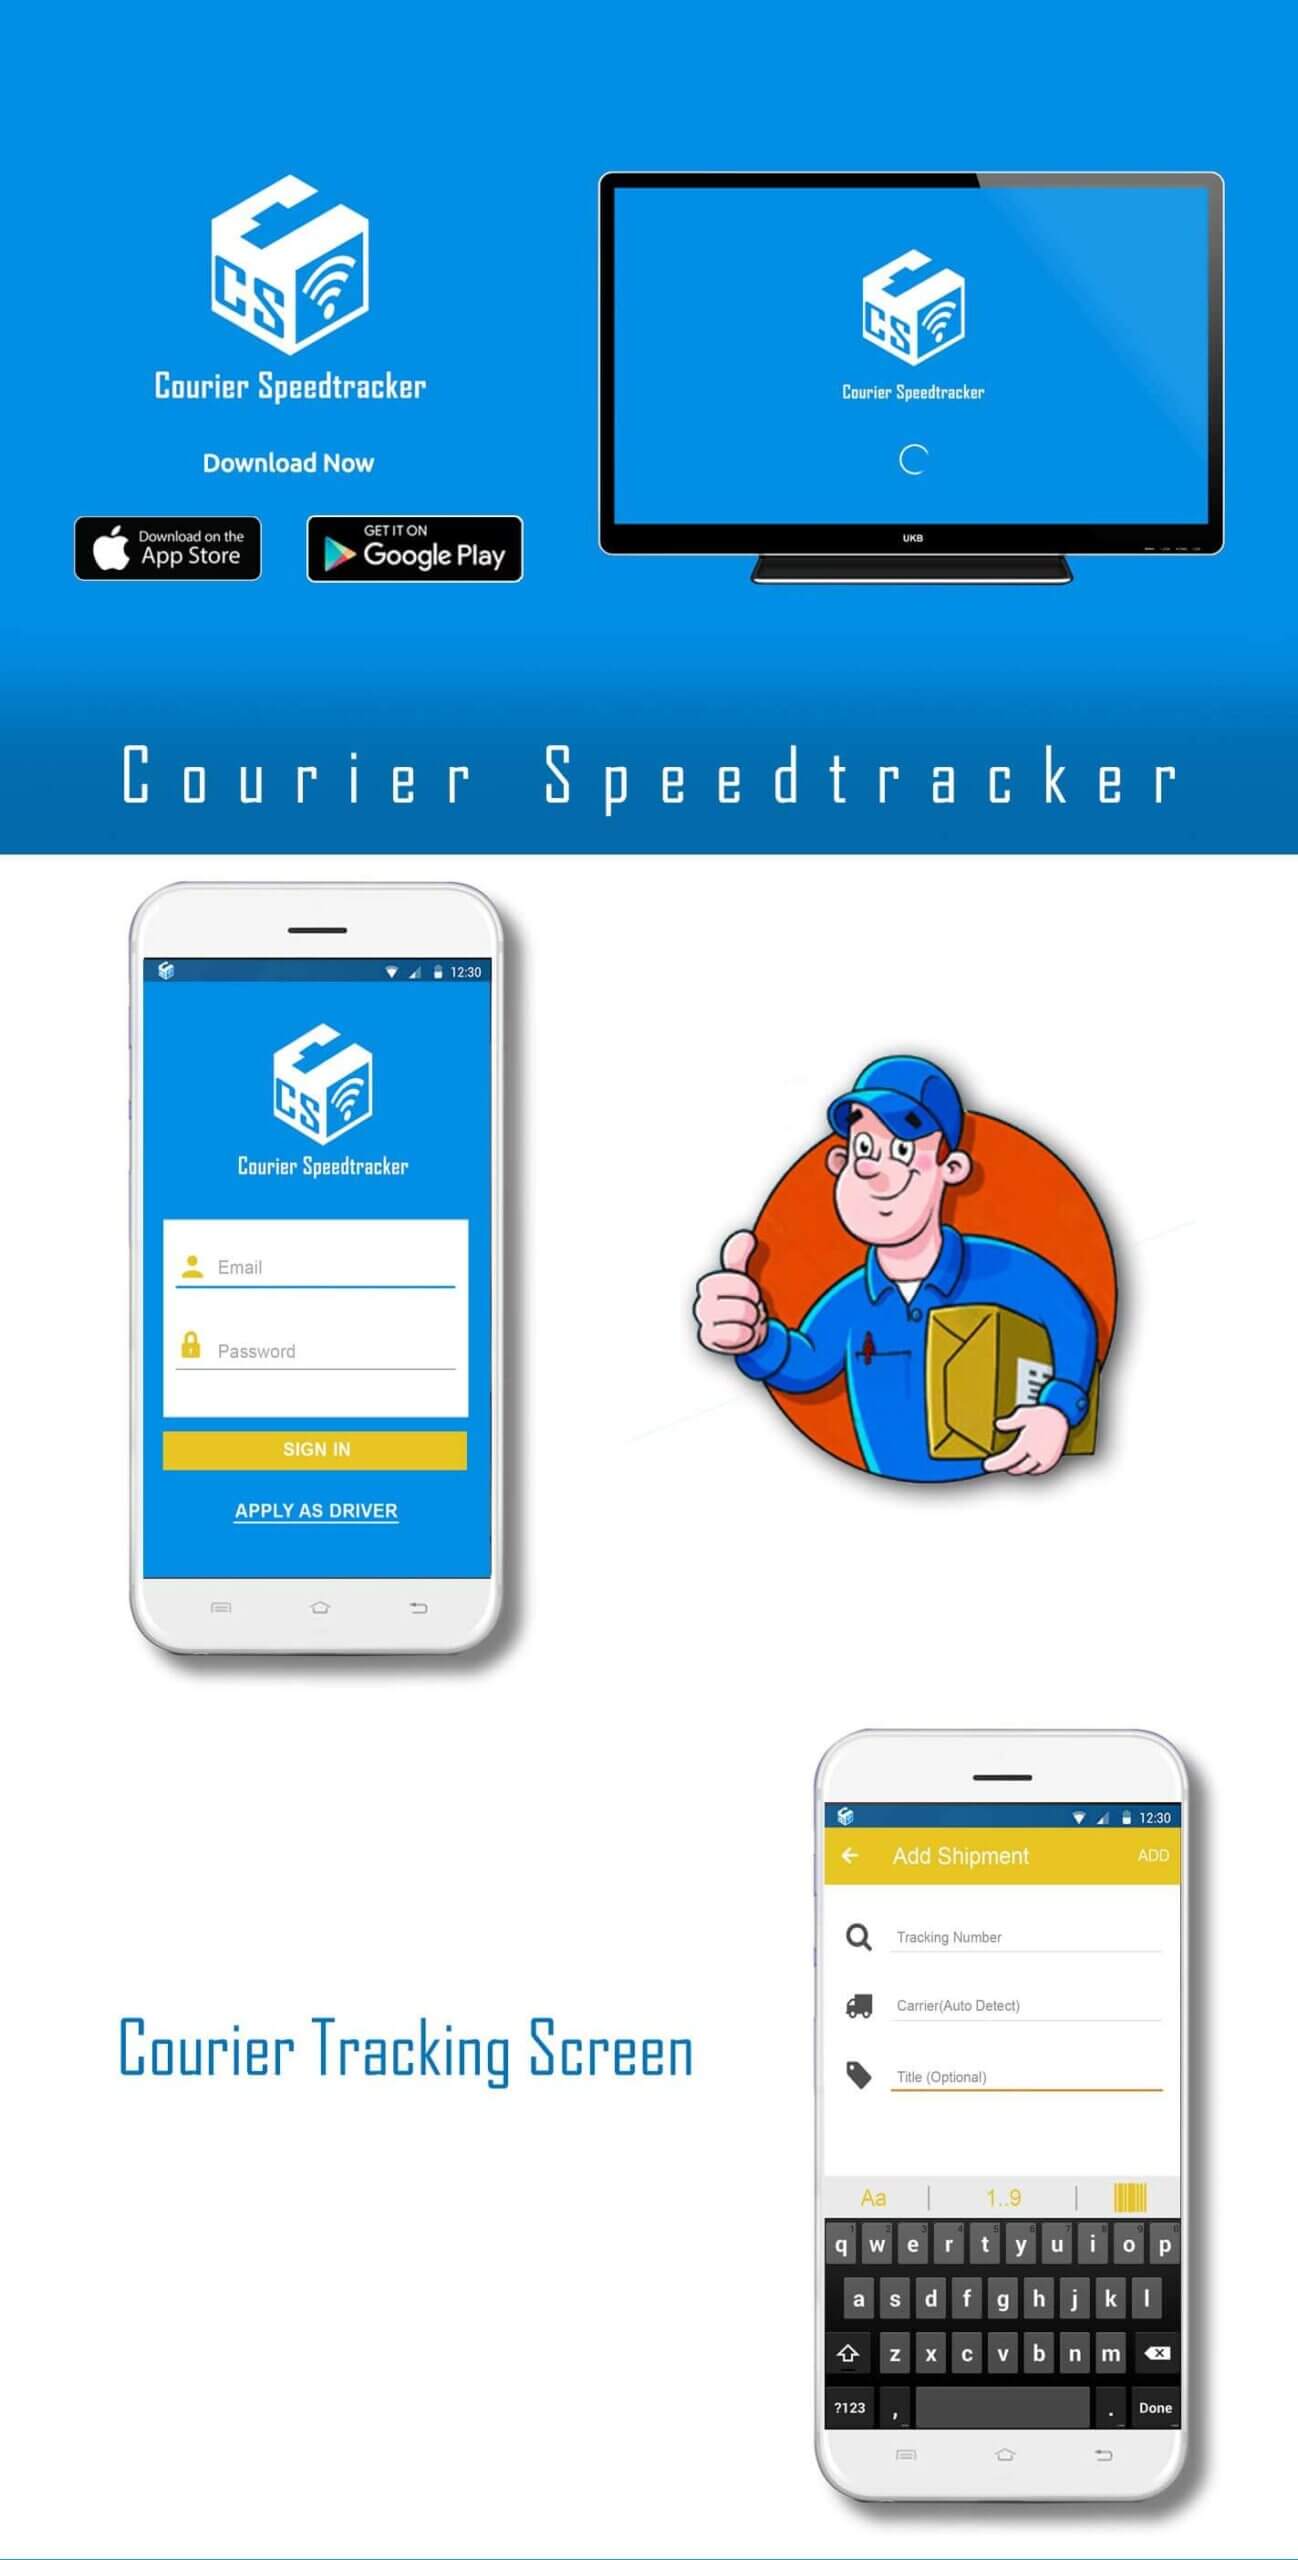 Courier-Speedtracker App CaracalEye